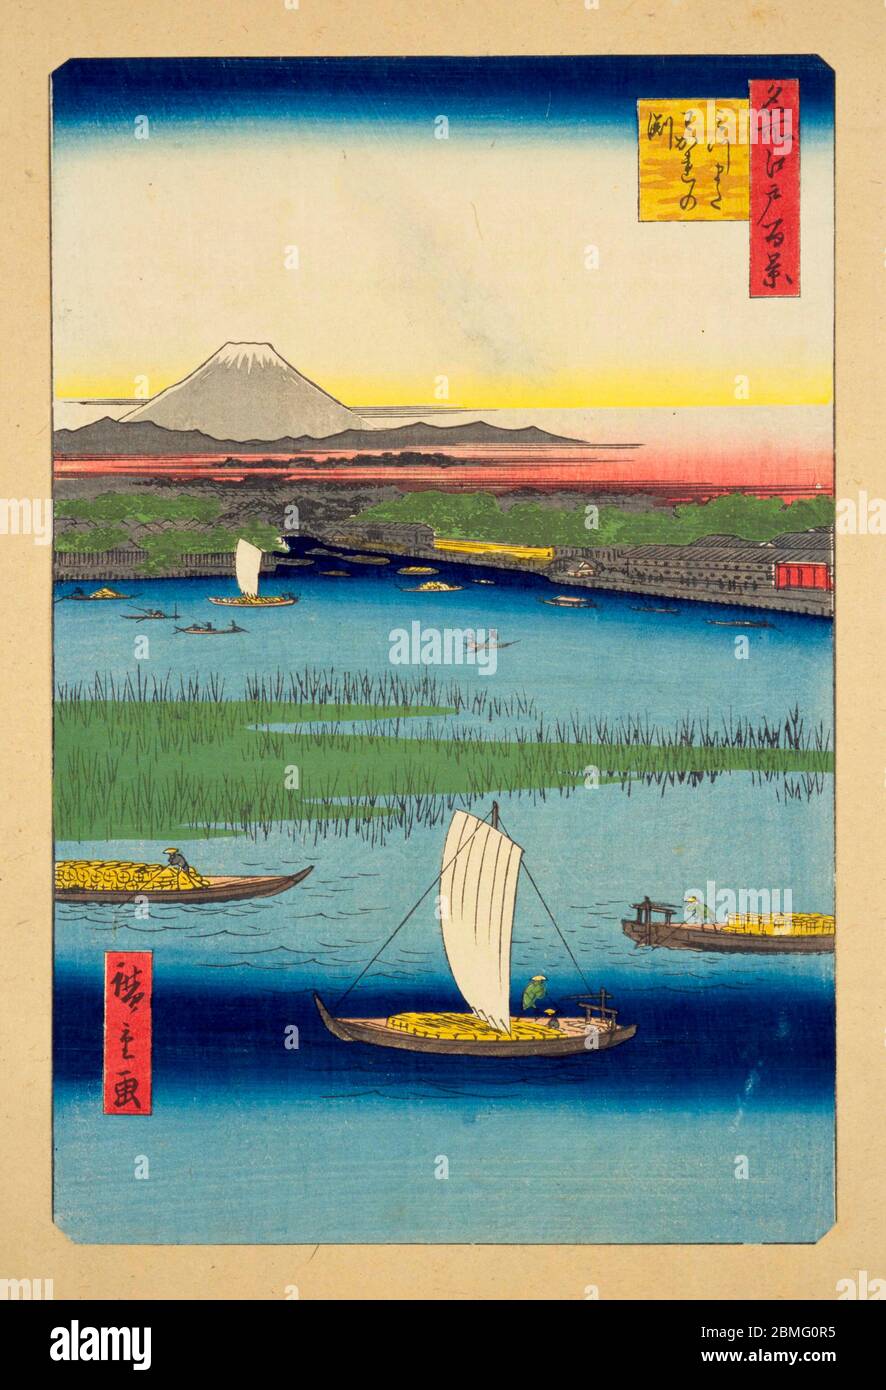 [ 1850 Japon - Sumidagawa ] — Bateaux sur le Sumidagawa à Edo (Tokyo actuel), 1857 (Ansei, 4). En arrière-plan, le Mont Fuji est visible. Cette impression en bois est l'image 57 dans une centaine de vues célèbres d'Edo (名所江戸百景, Meisho Edo Hyakkei), une série créée par l'artiste ukiyoe Utagawa Hiroshige (歌川広重, 1797–1858). C'est l'une des 30 scènes d'été de la série. Titre: Mitsumata Wakarenofuchi (みつまたわかれの淵) 19ième siècle vintage Ukiyoe imprimé en blocs de bois. Banque D'Images